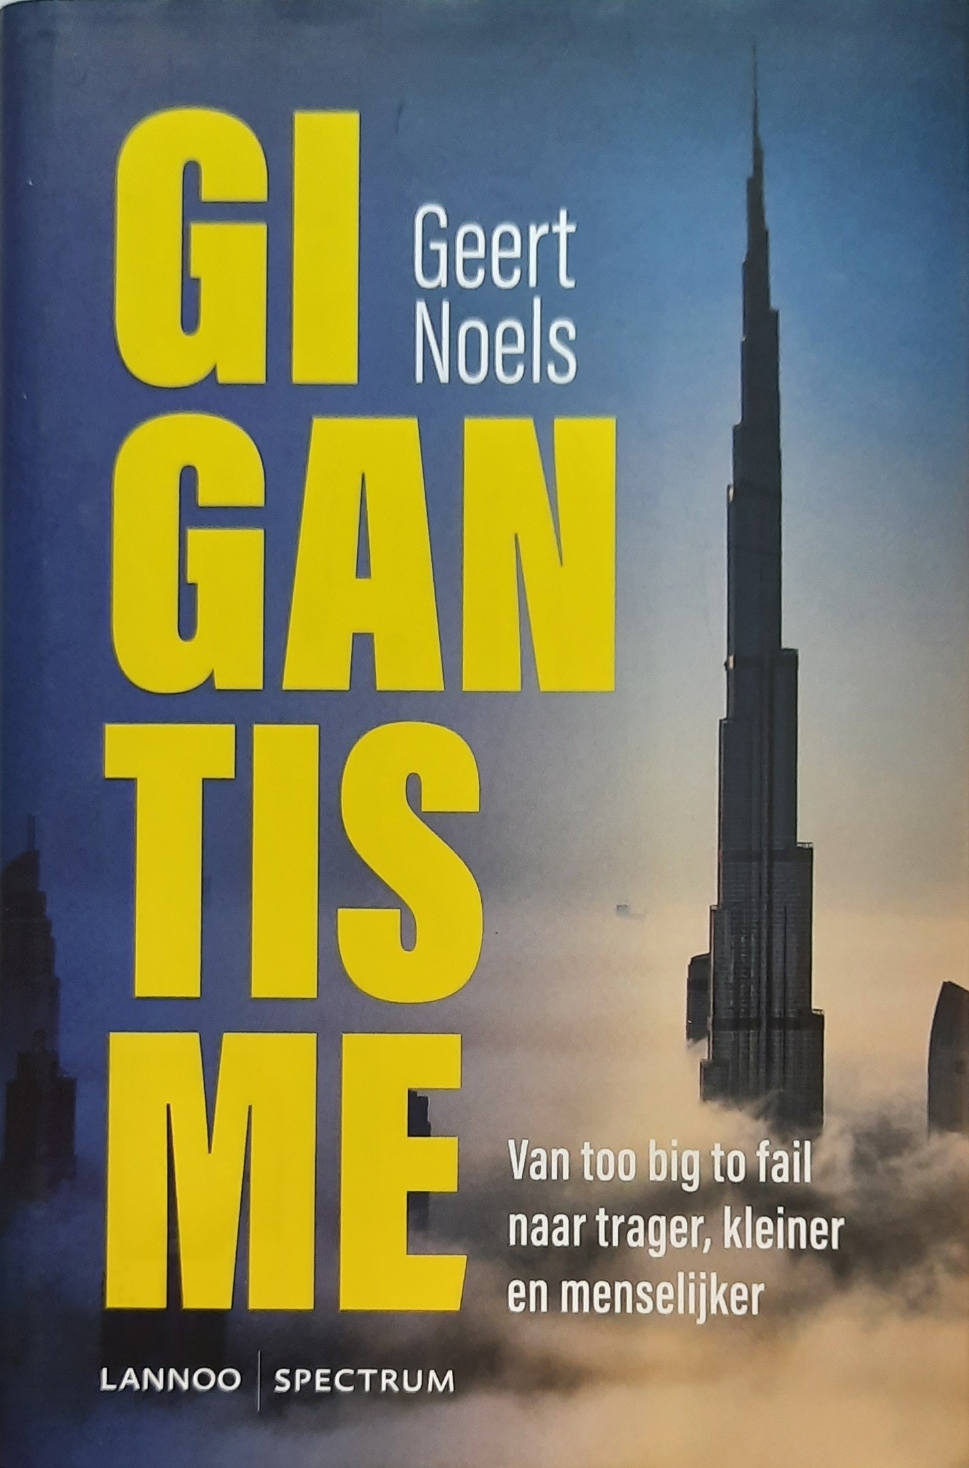 Book cover 202107290209: NOELS Geert | Gigantisme. Van too big to fail naar trager, kleiner en menselijker